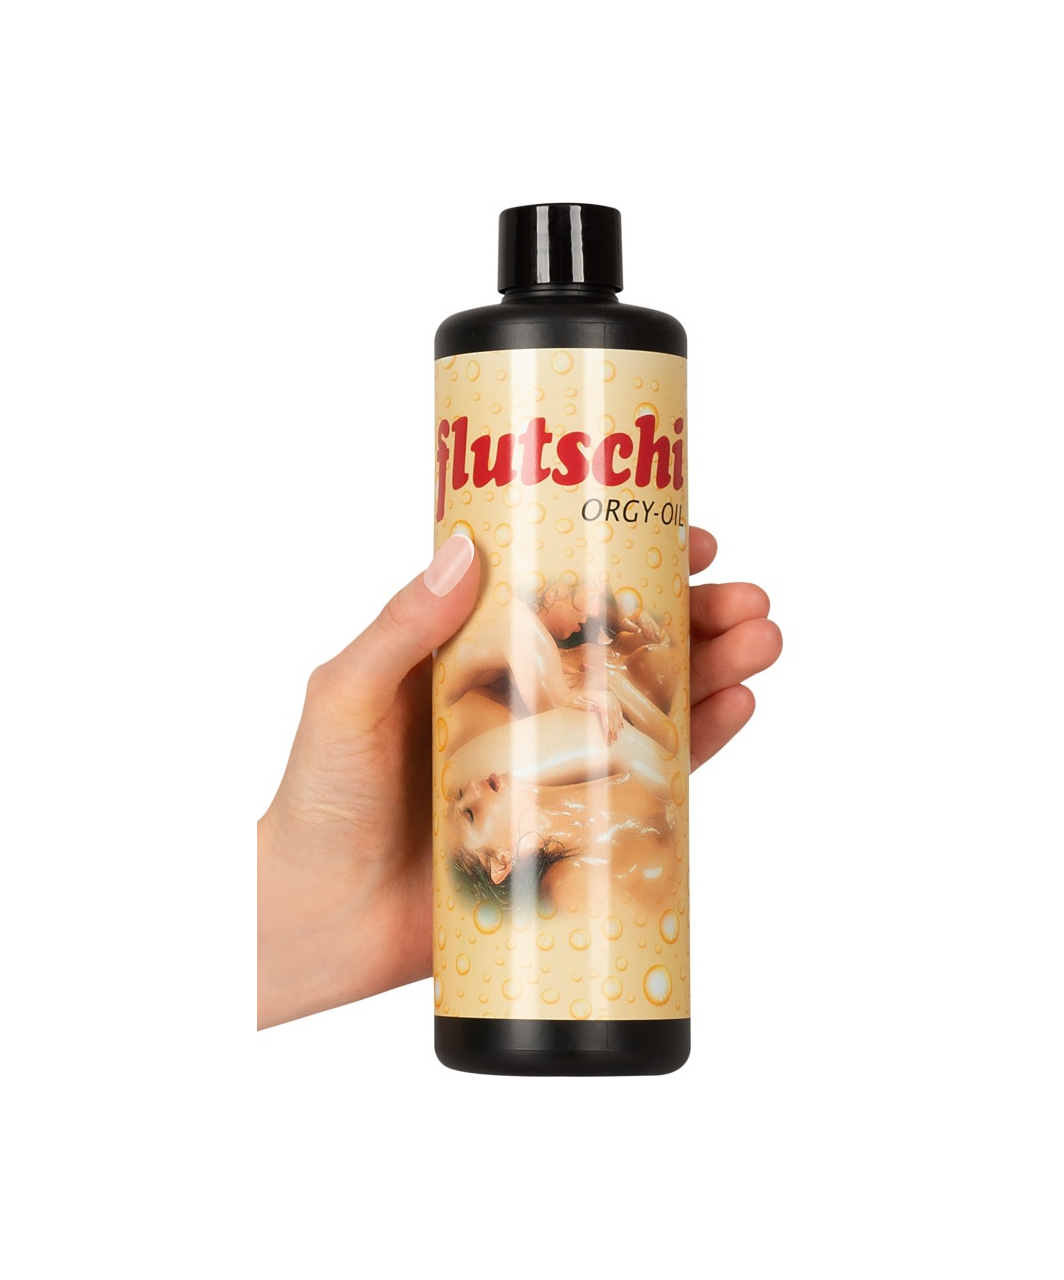 Flutschi Orgy массажное масло (500 мл)